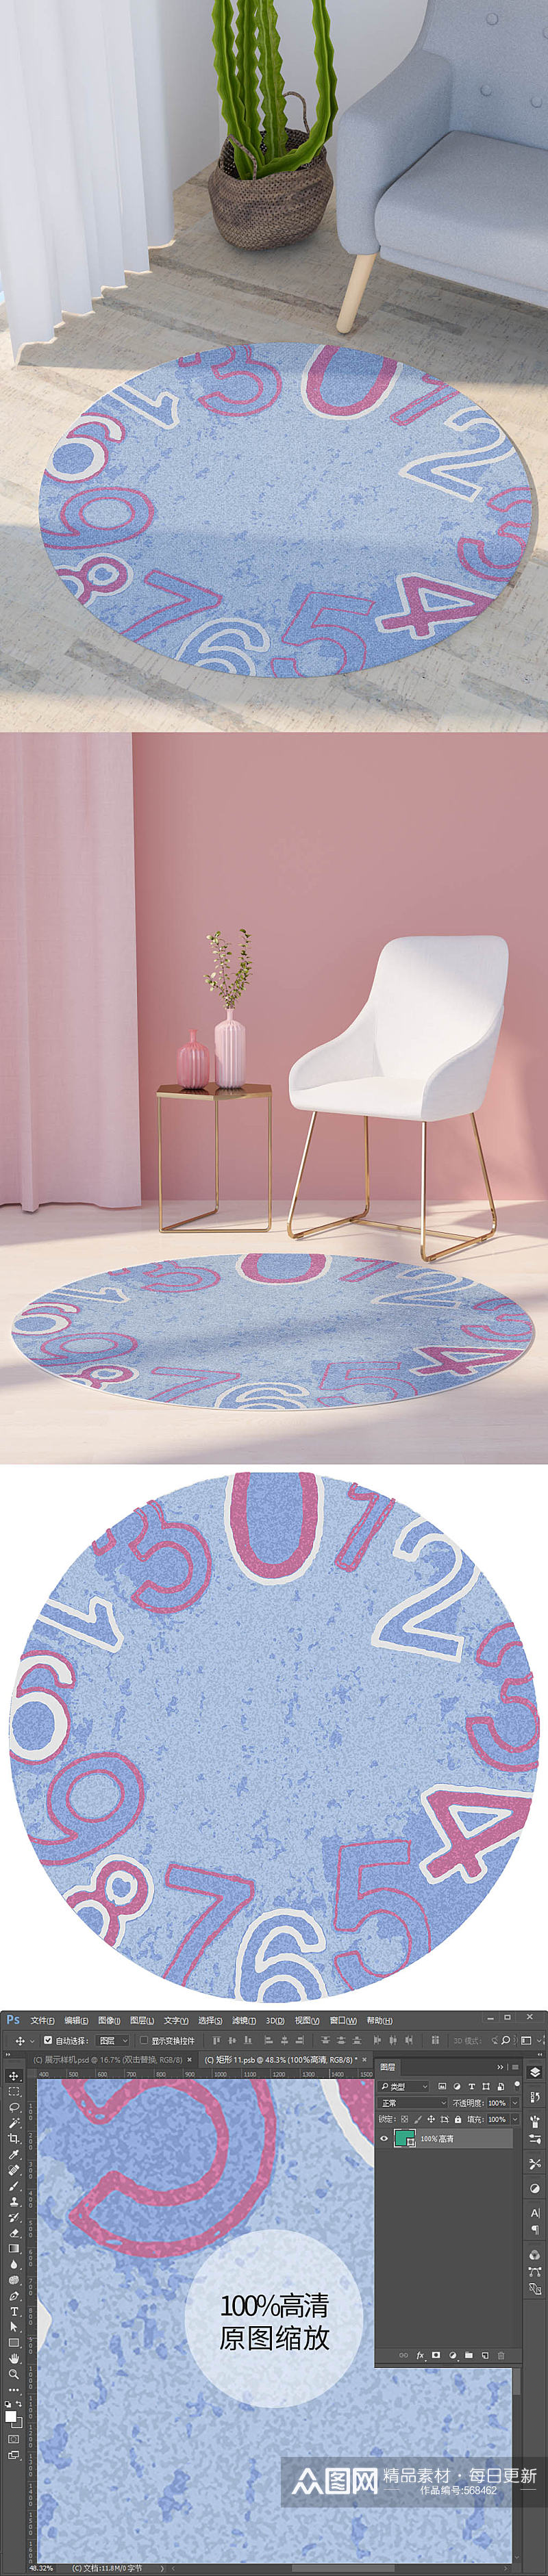 阿拉伯数字圆形画印花地毯垫子简约现代图素材